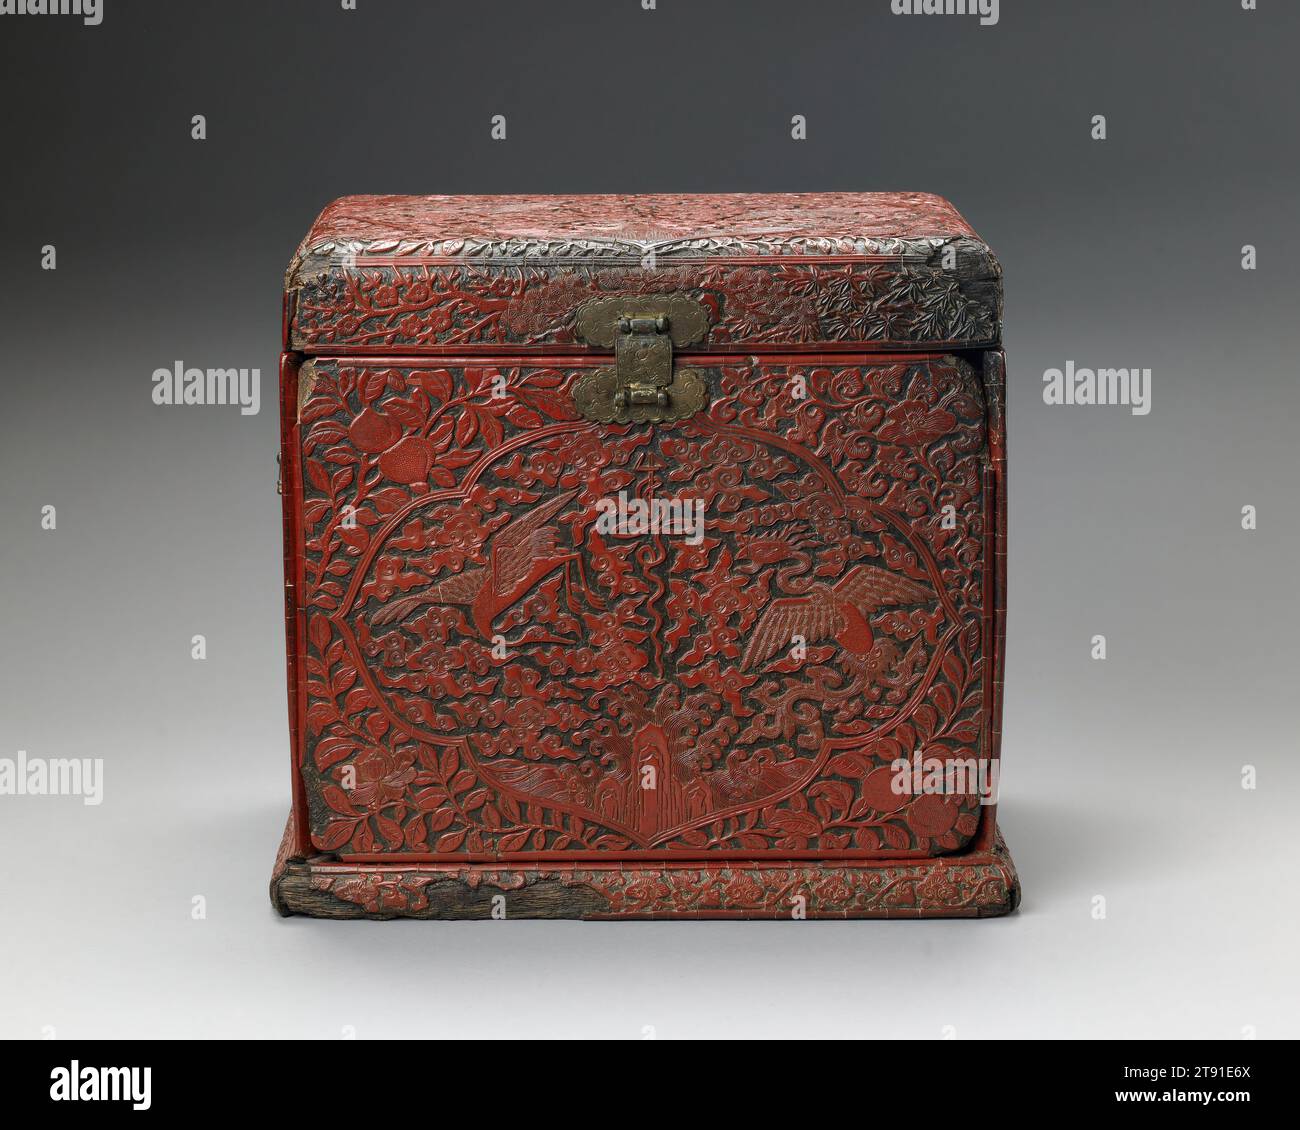 Kosmetikschrank, 16. Jahrhundert, 12 1/8 x 13 3/8 x 9 1/2 Zoll (30,8 x 33,97 x 24,13 cm), geschnitzter roter Lack auf einem Weichholzrahmen, China, 16. Jahrhundert, eine gravierte und vergoldete Markierung auf der Basis dieser Tischplatte sagt uns, dass es ein Produkt der offiziellen Werkstätten der Jiajing-Ära der Ming-Dynastie ist, es stammt aus der Mitte der 1500er Jahre Diese Box zeigt ein reich orchestriertes Schema symbolischer Pflanzen und Tiere. Die Kartuschen oben und an den Seiten zeigen den verheißungsvollen phönix und die Kraniche zwischen Wolken. Auch Symbole für langes Leben erscheinen – der Shou-Charakter (Langlebigkeit) Stockfoto